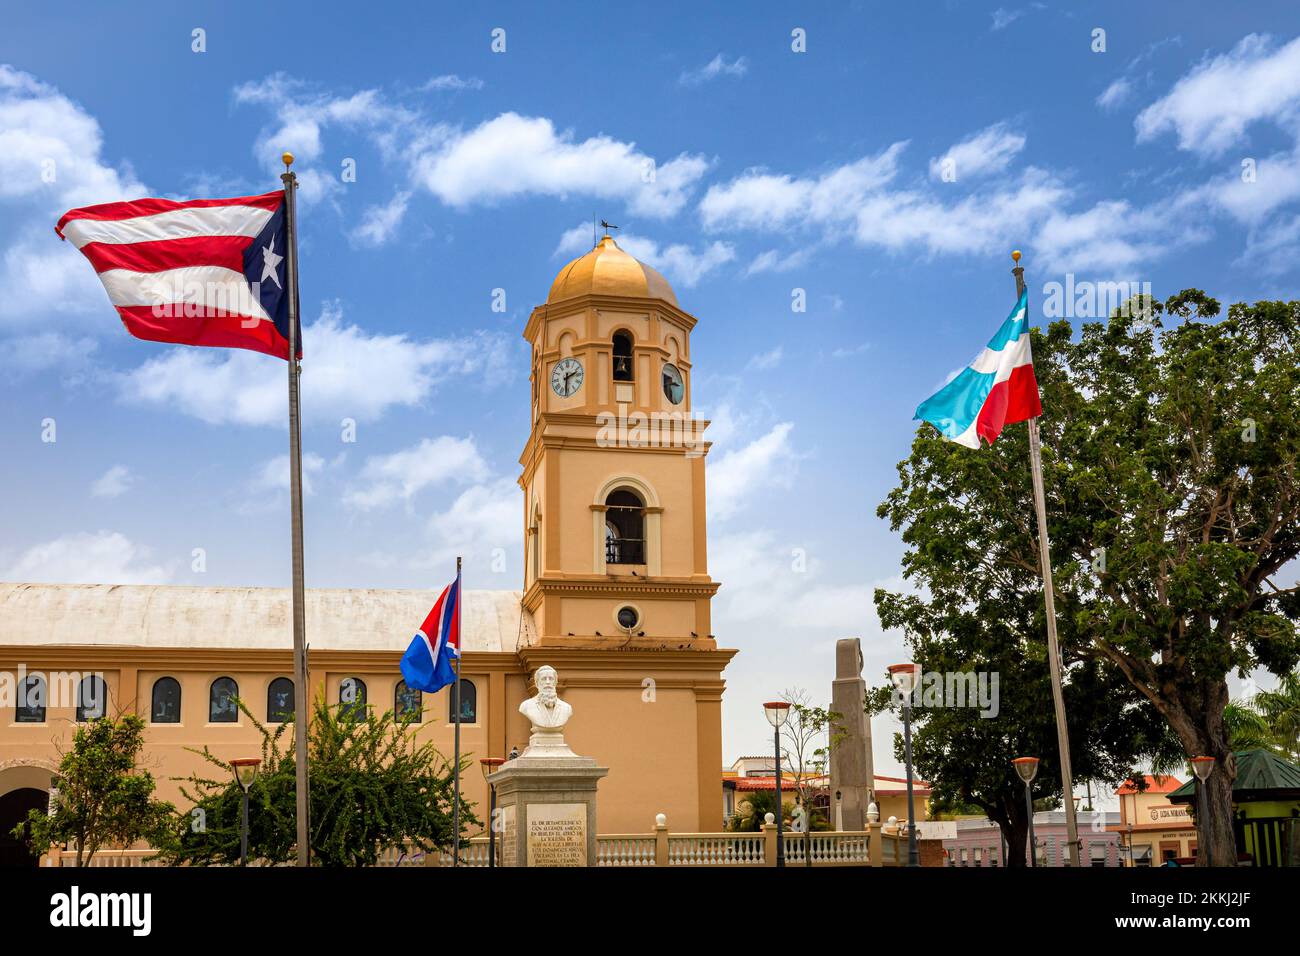 La bandera puertorriqueña y otras adornan la plaza de la Iglesia San Miguel Arcángel en Cabo Rojo, en la isla tropical caribeña de Puerto Rico, Estados Unidos. Foto de stock